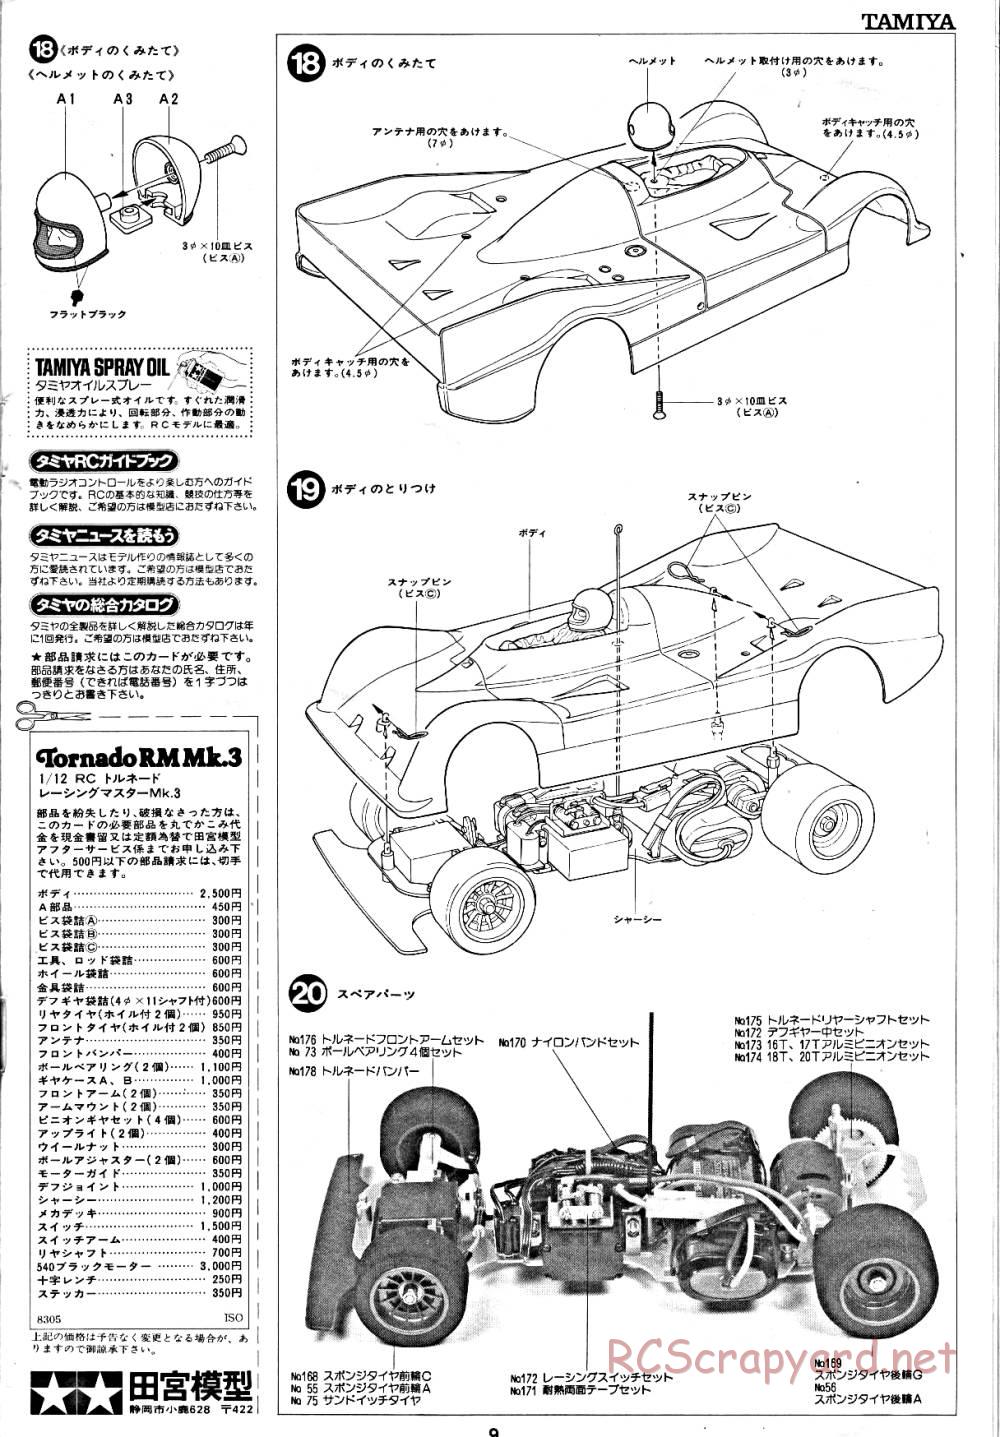 Tamiya - Tornado - RM MK.3 - 58032 - Manual - Page 9